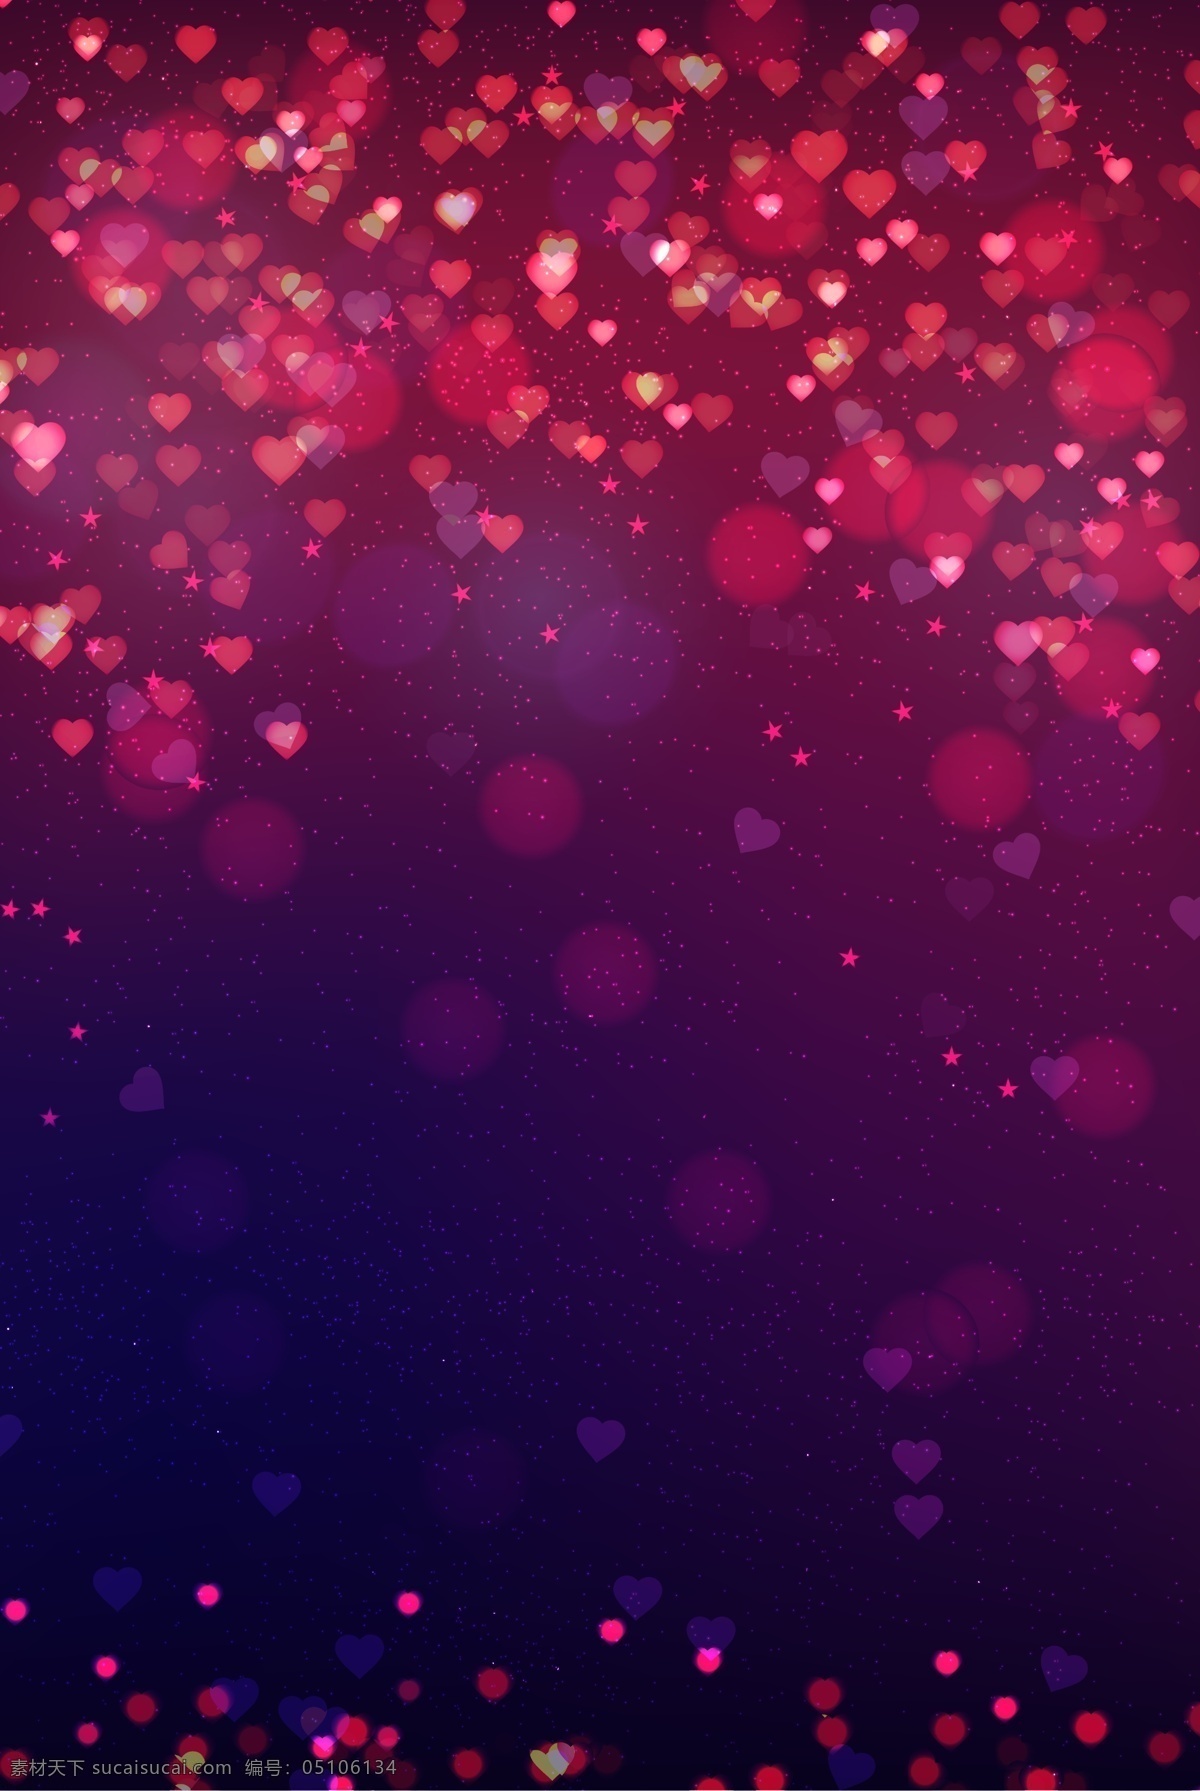 璀璨 桃 心 紫红 甜蜜 背景 2018最新 桃心 紫红色 情人节 女性用品 海报 促销 活动 宣传